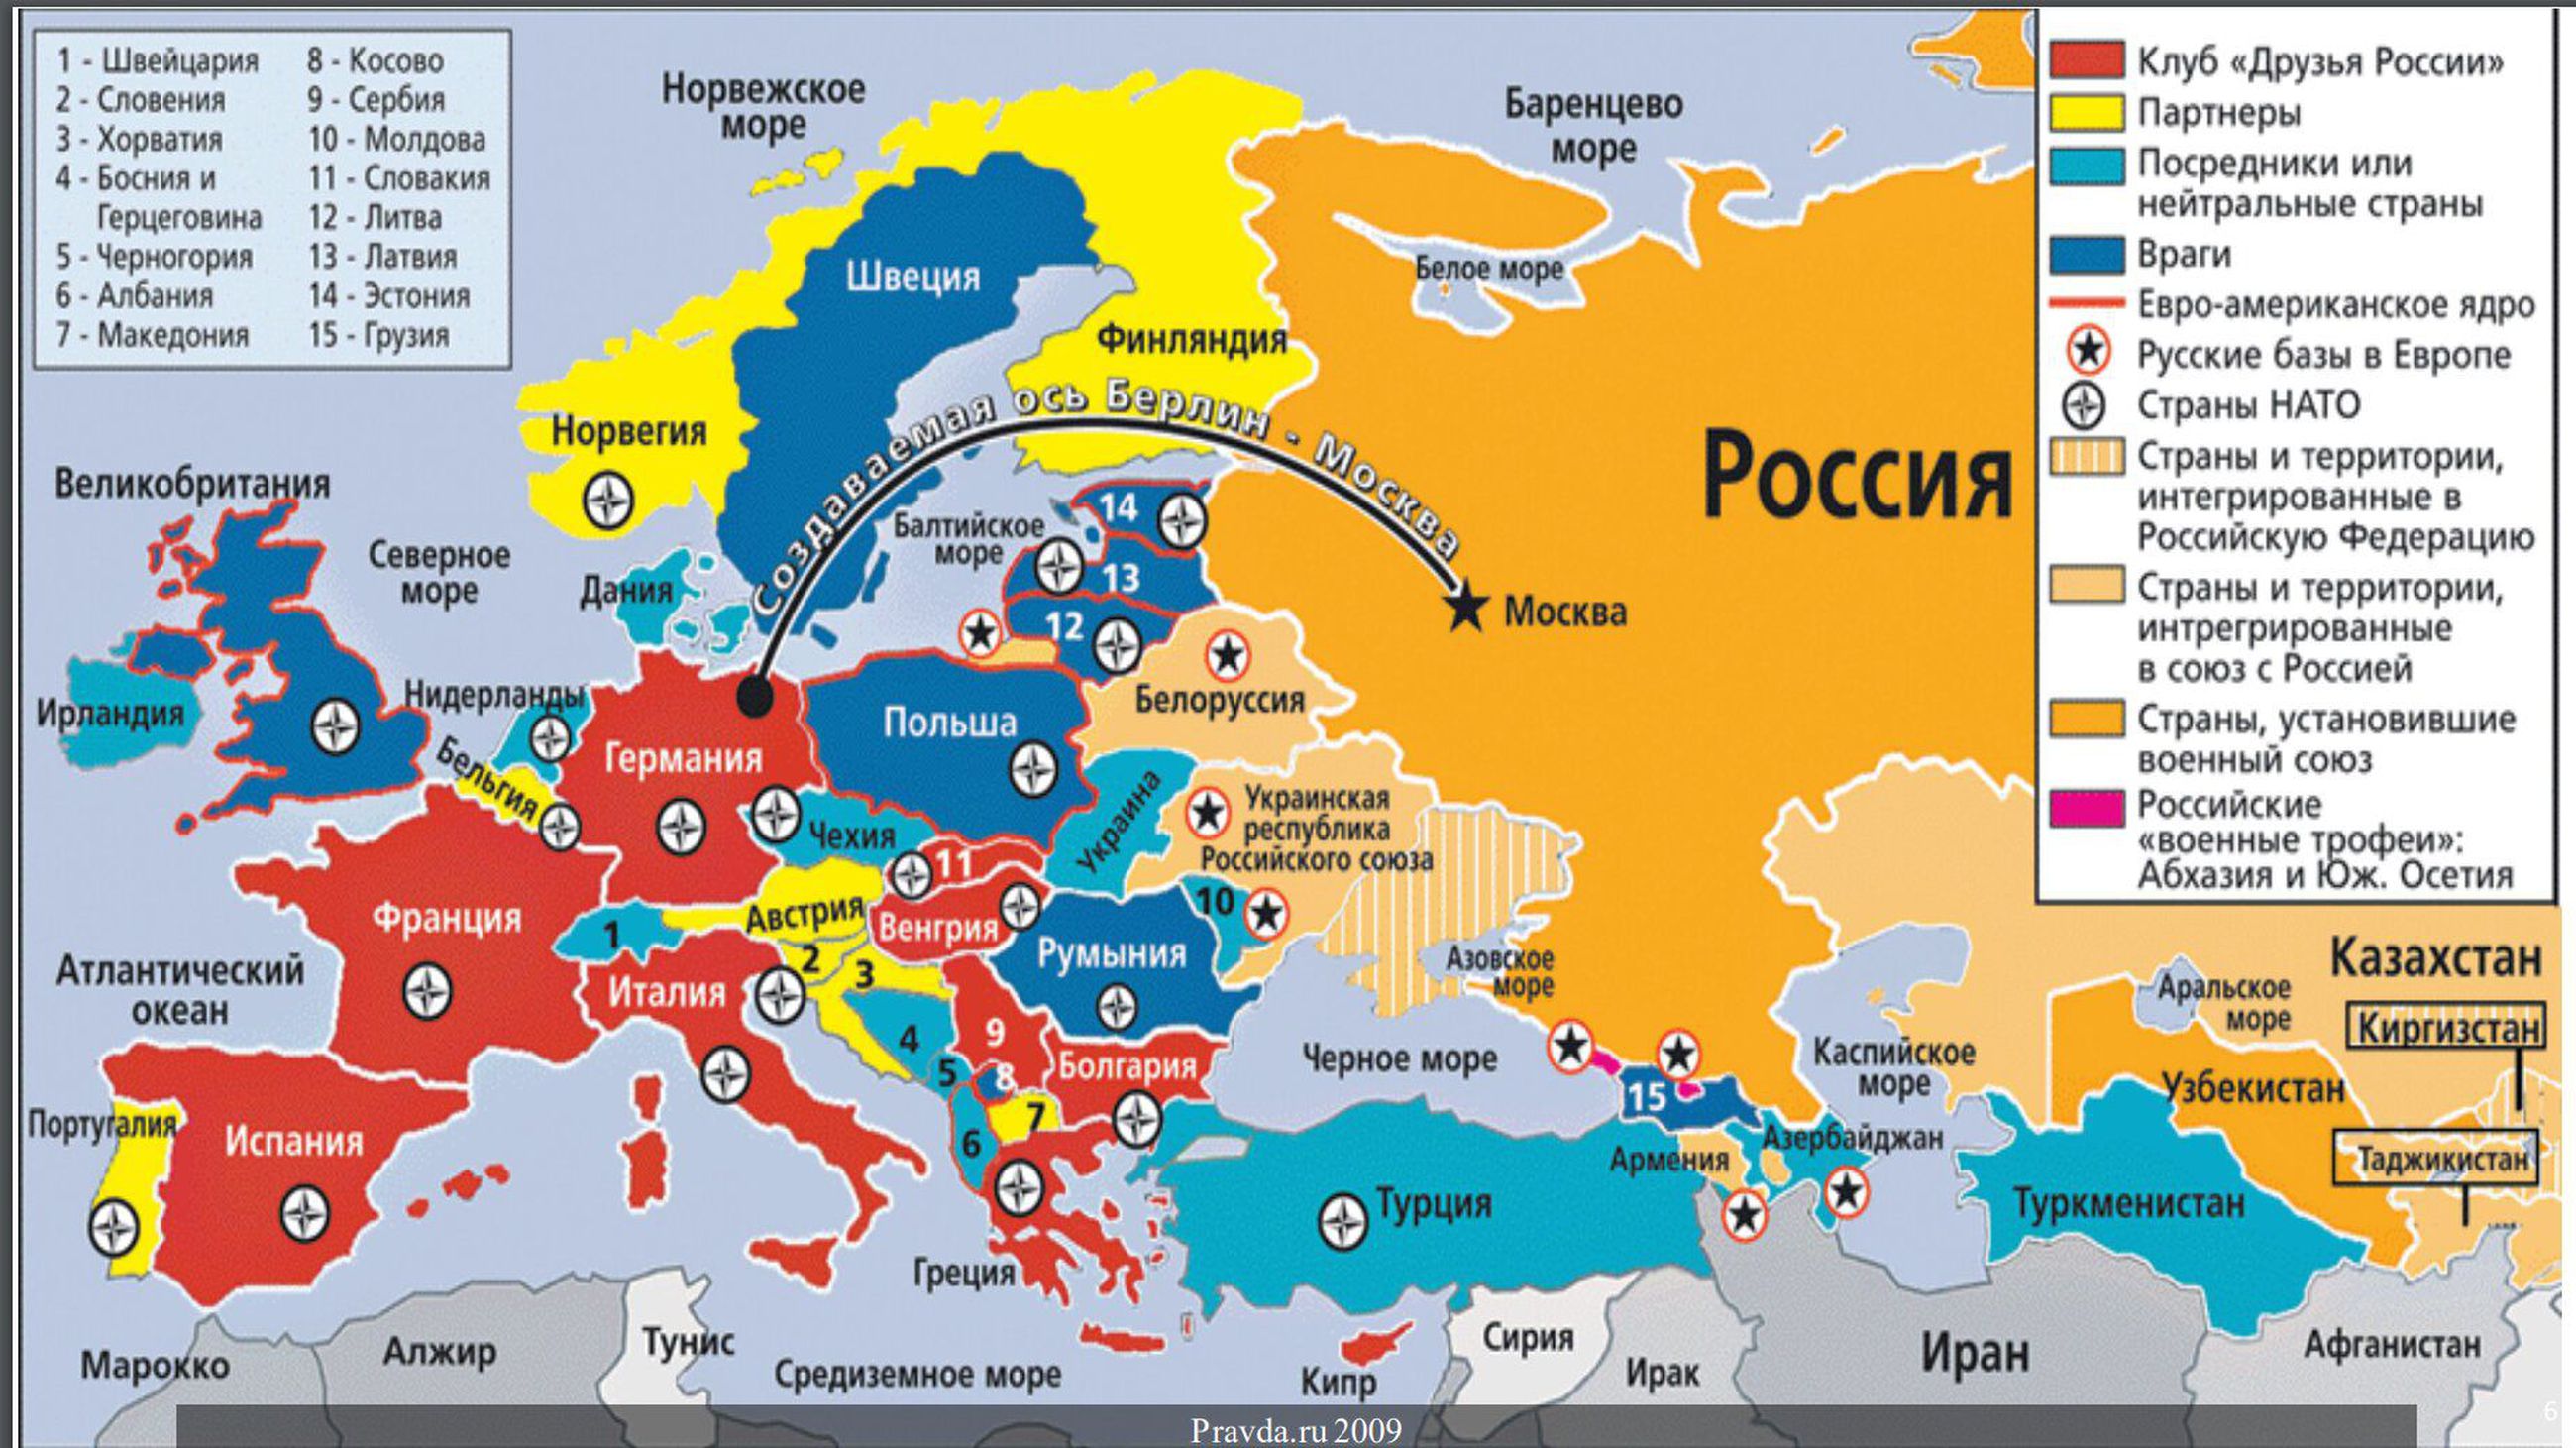 Propagandaa Venäjän mediasta, lue täysin omalla vastuulla! Venäläisessä tiedotusvälineessä vuonna 2009 julkaistu kartta edustaa pitkän linjan strategista ja geopoliittista ajattelua Putinin Venäjällä. Ukraina on palasteltu osiin. EU- ja Nato-maat on jaoteltu tarkoitushakuisesti ”vihollisiin”, ”kumppaneihin”, ”neutraaleihin” ja ”ystäviin”. Riidan kylväminen onkin ollut keskeinen osa Venäjän painostusta.